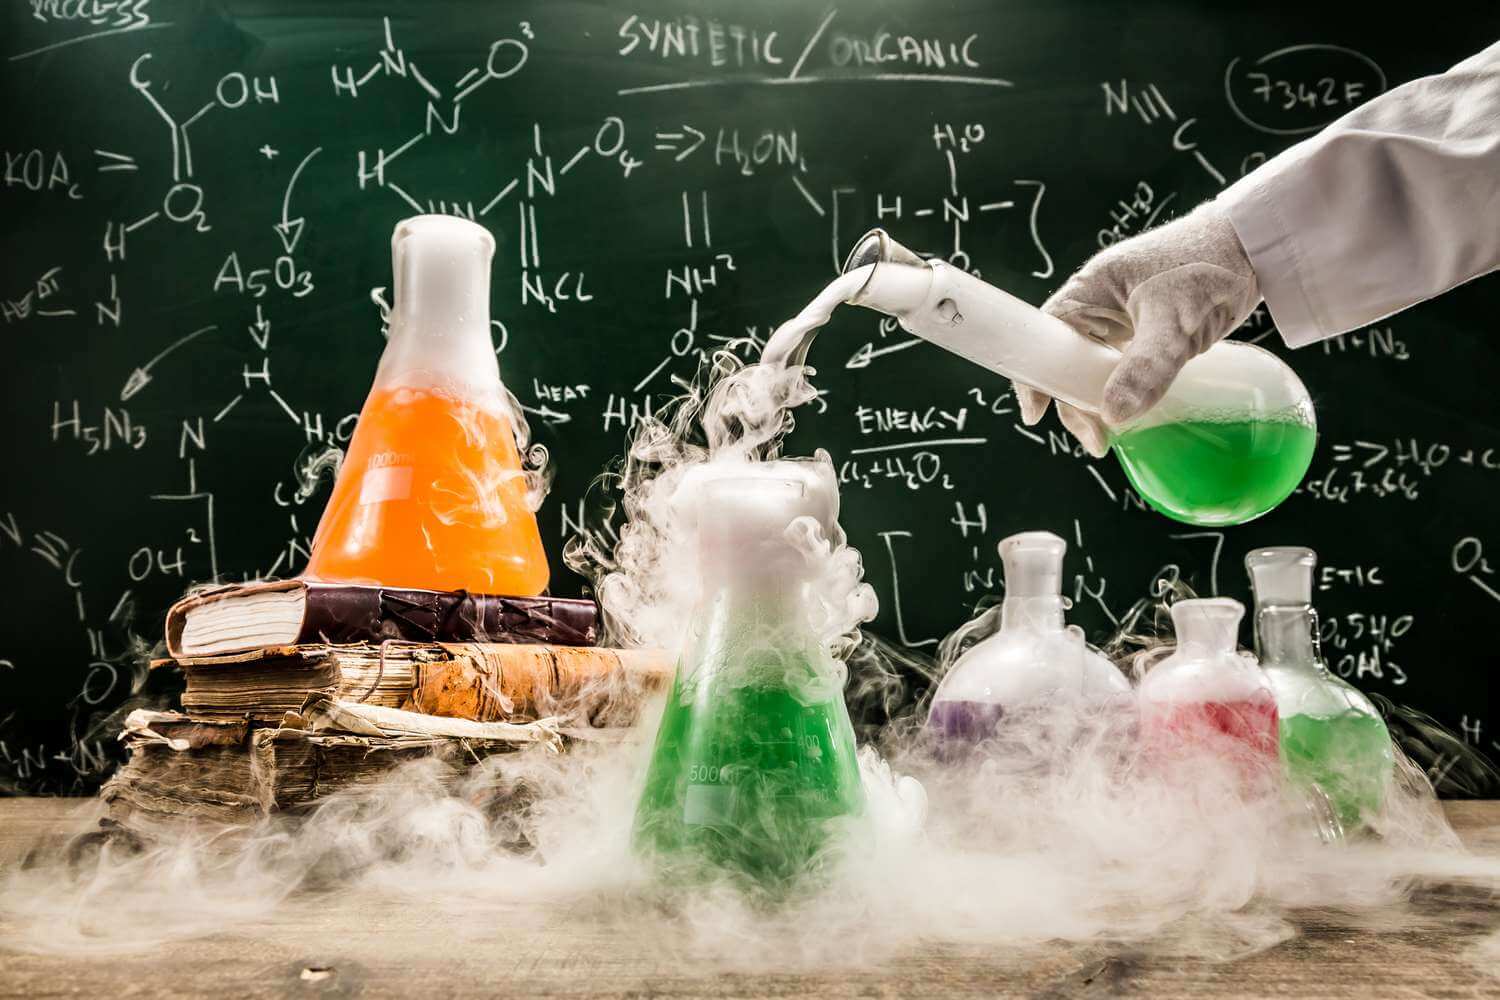 Атомы и молекулы. В химии любой предмет рассматривается в качестве атомов и молекул. Изображение: www.thoughtco.com. Фото.